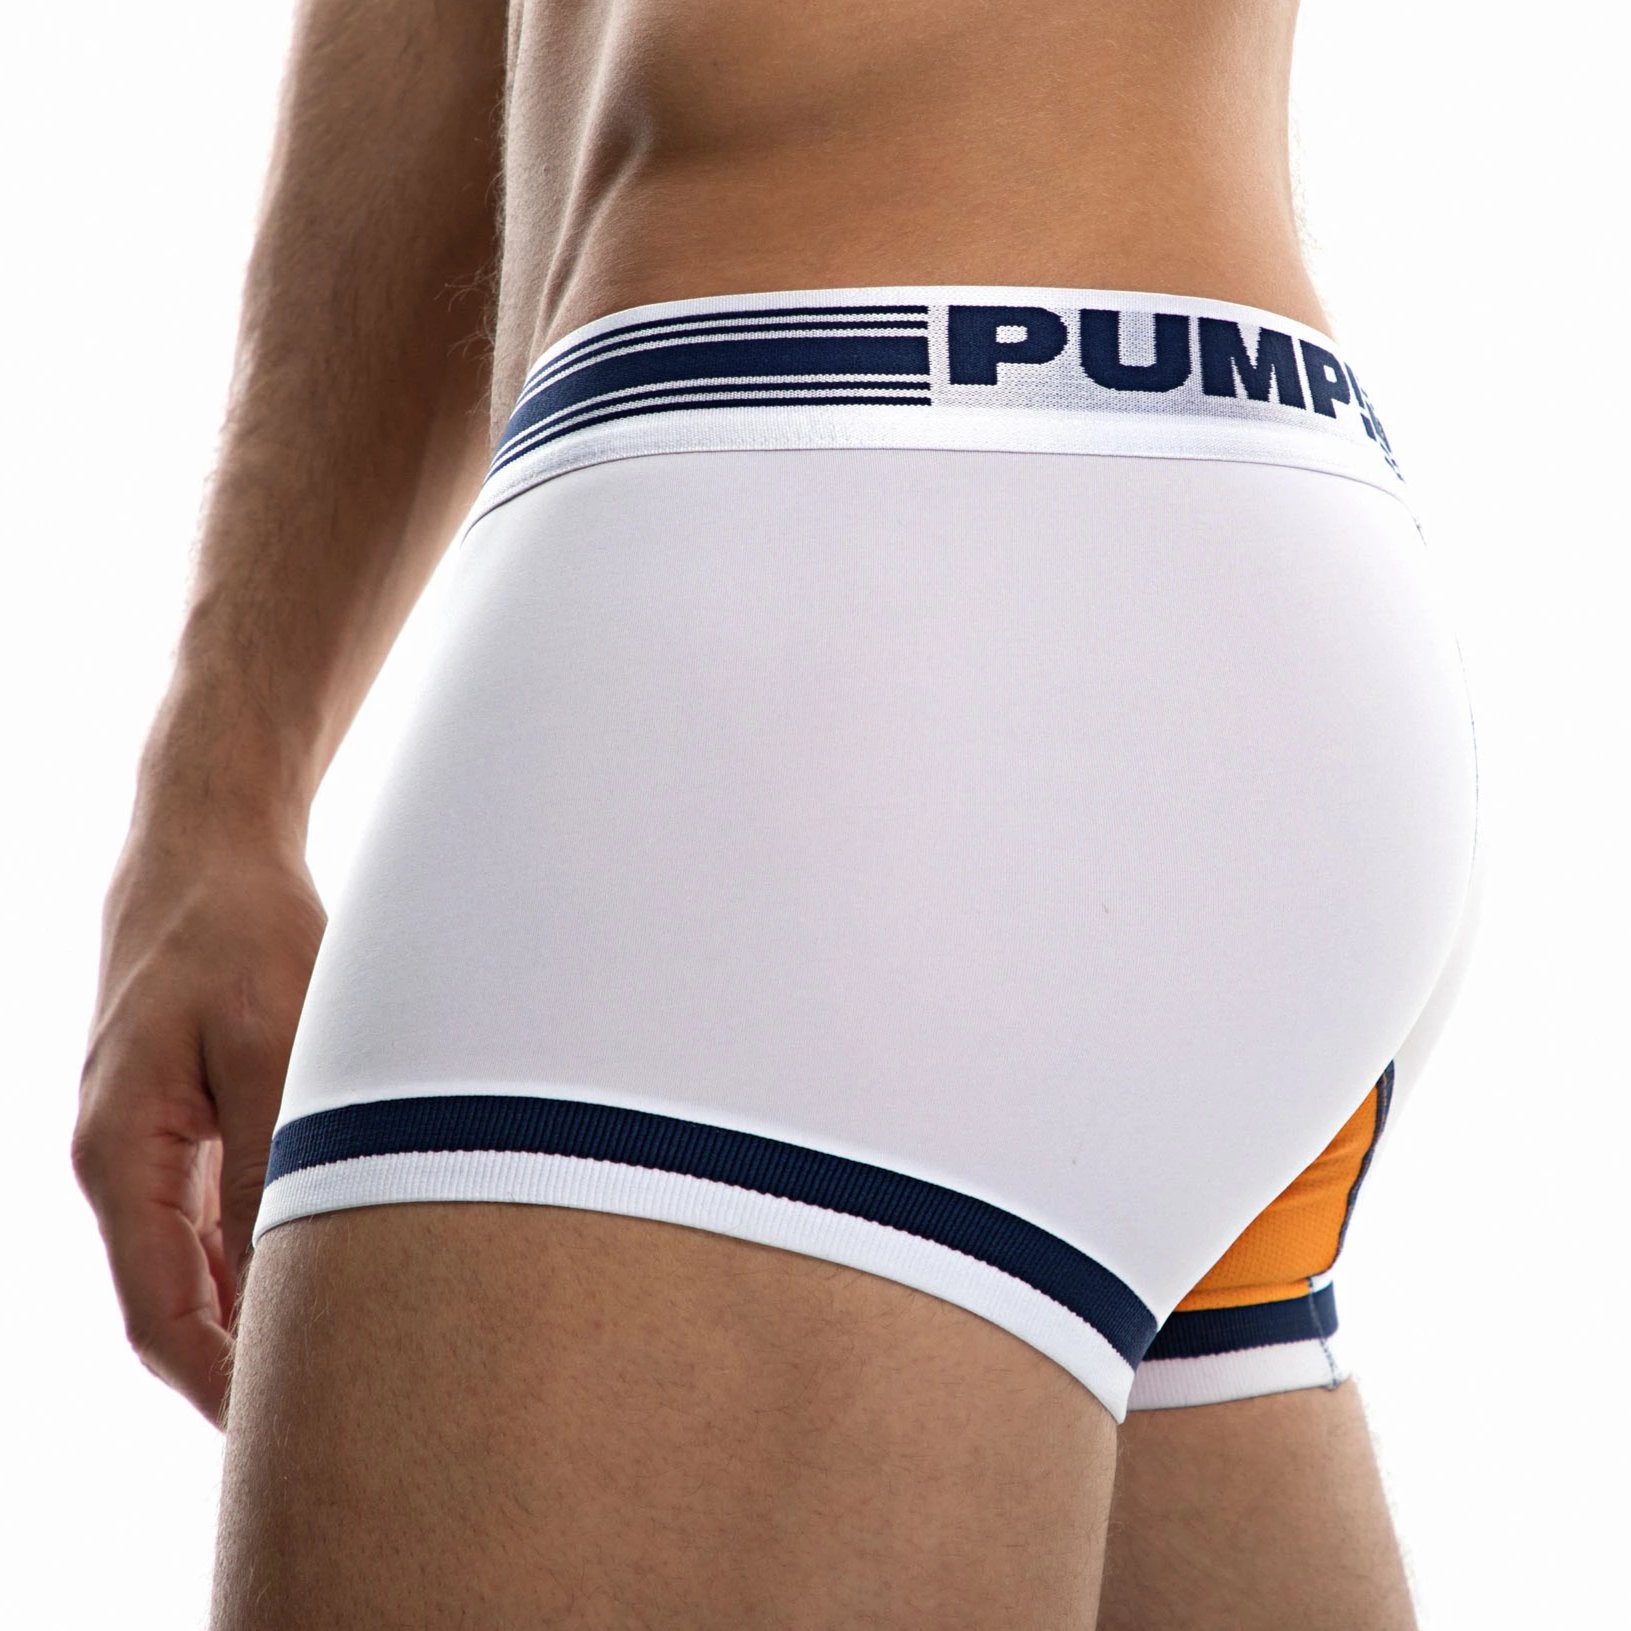 Touchdown Varsity Boxer Back by PUMP! Underwear at Trenderwear.com